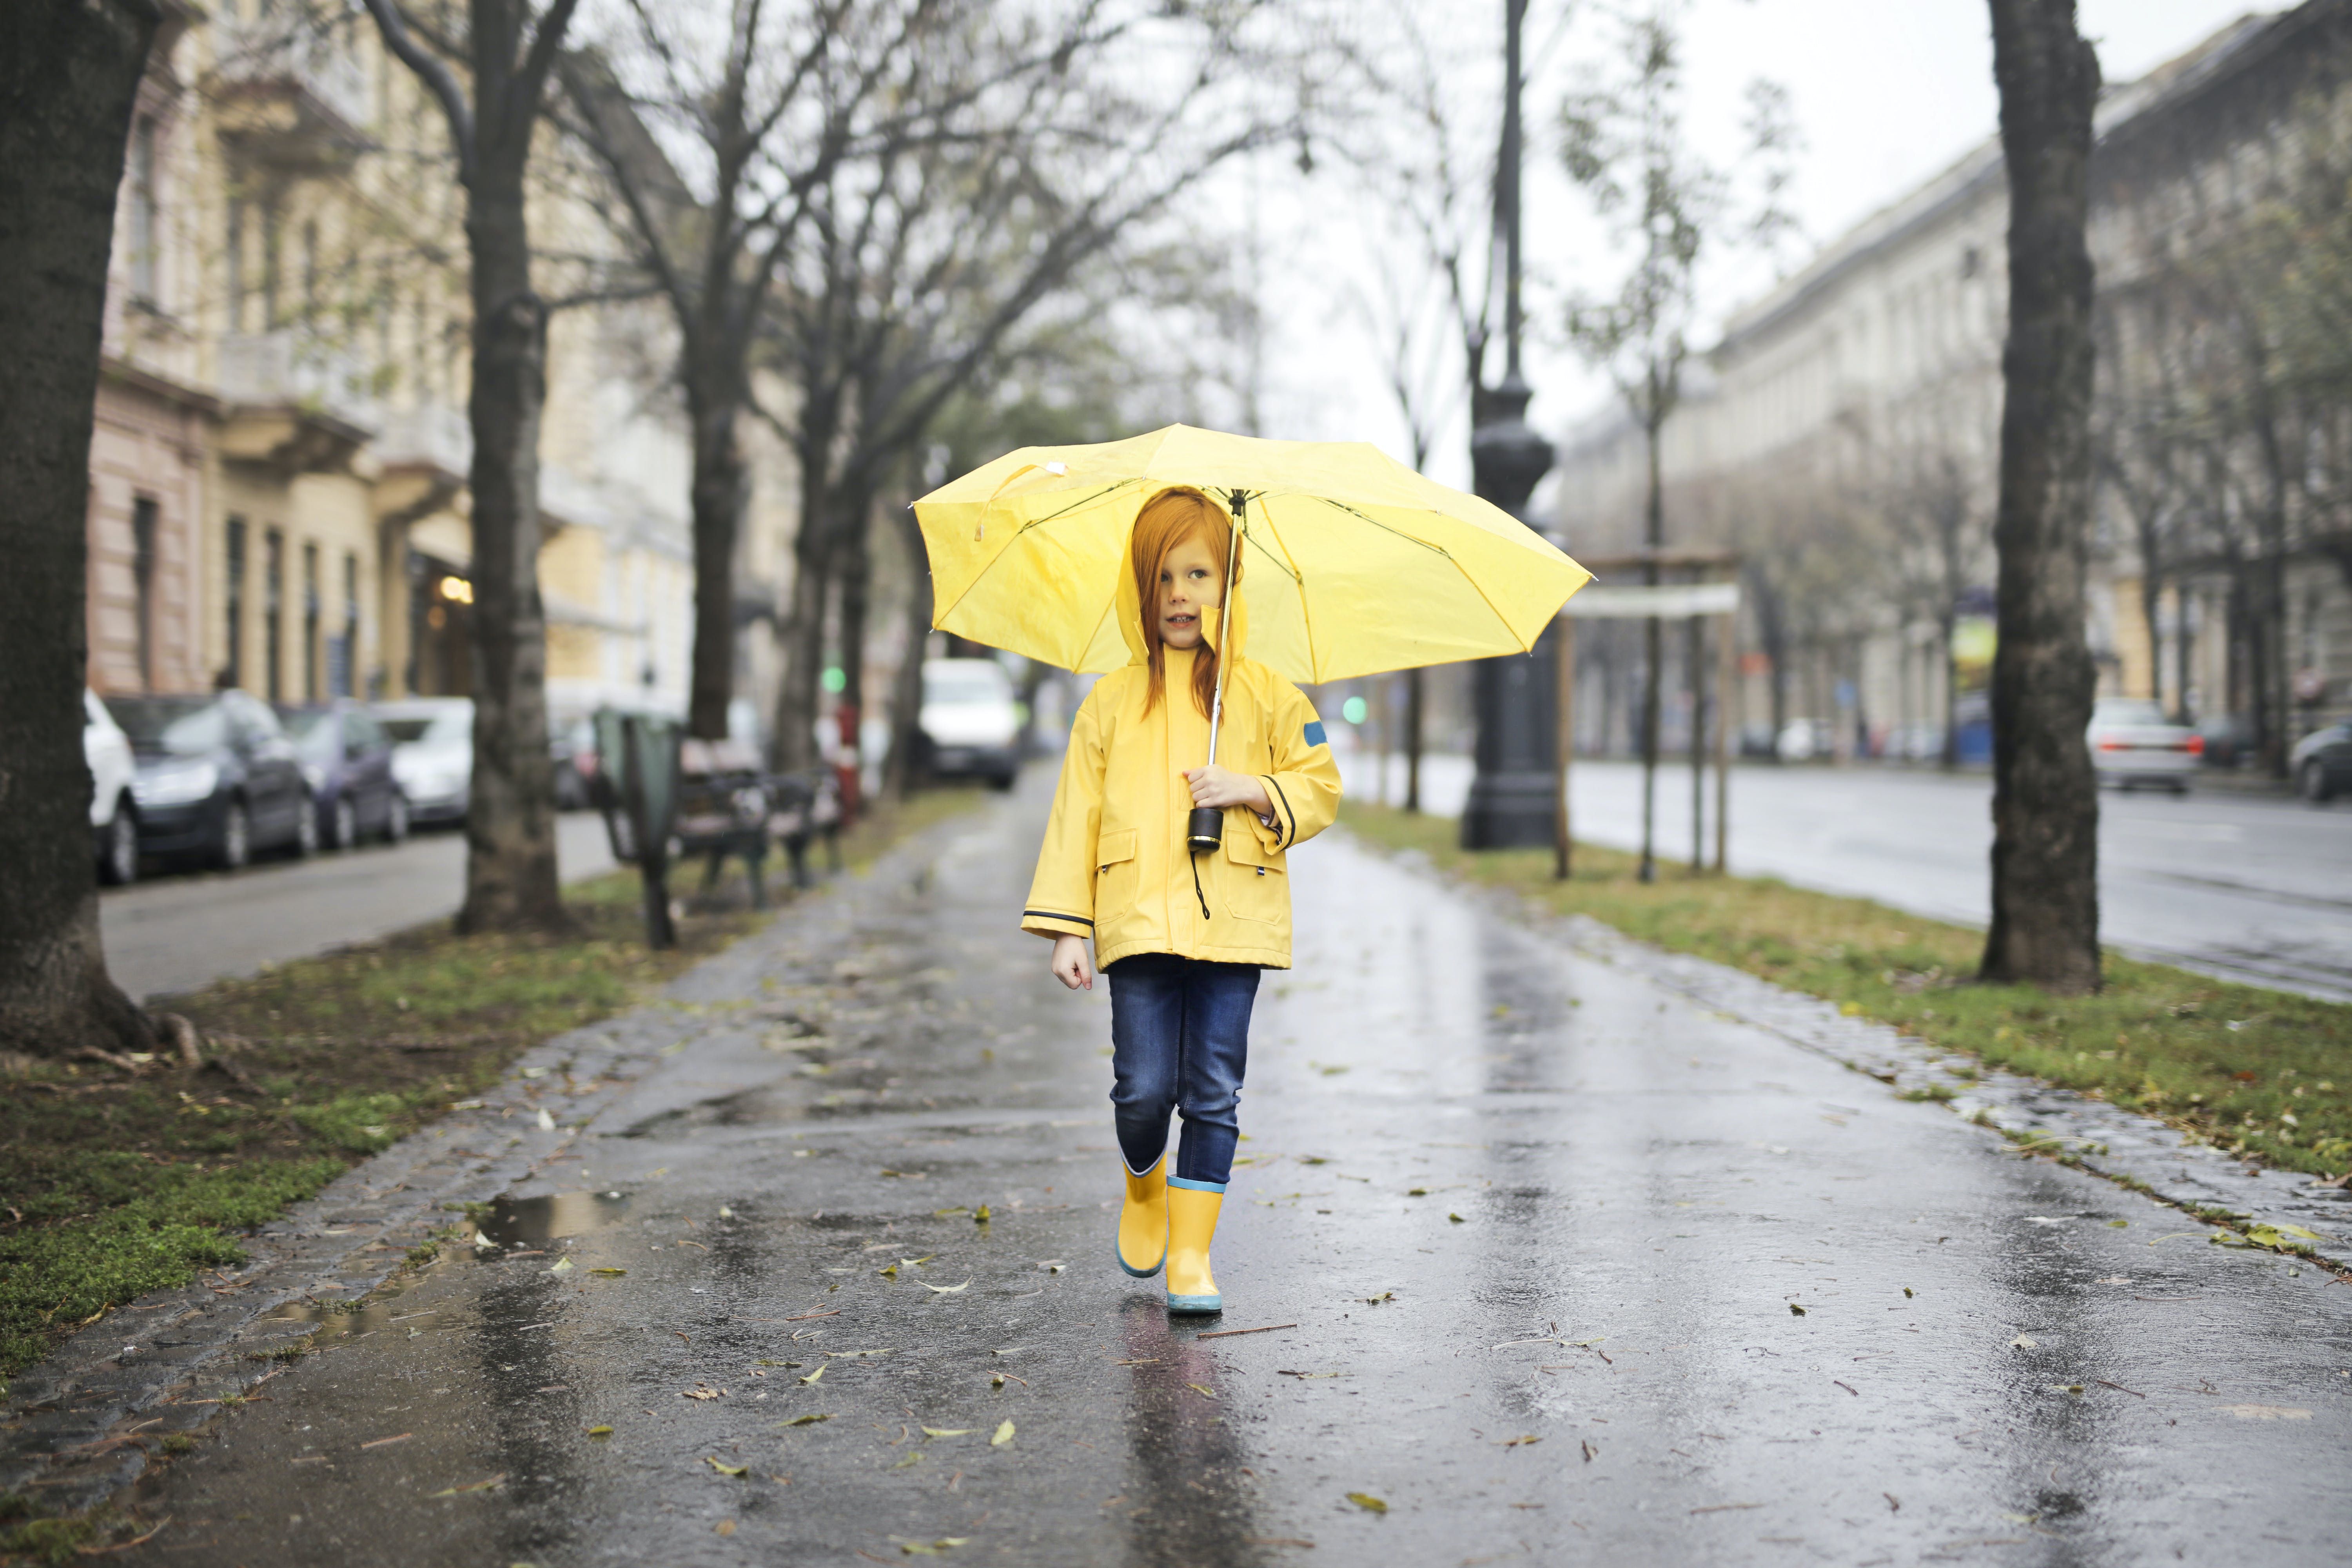 Ilustrasi seorang anak di bawah hujan dengan payung.